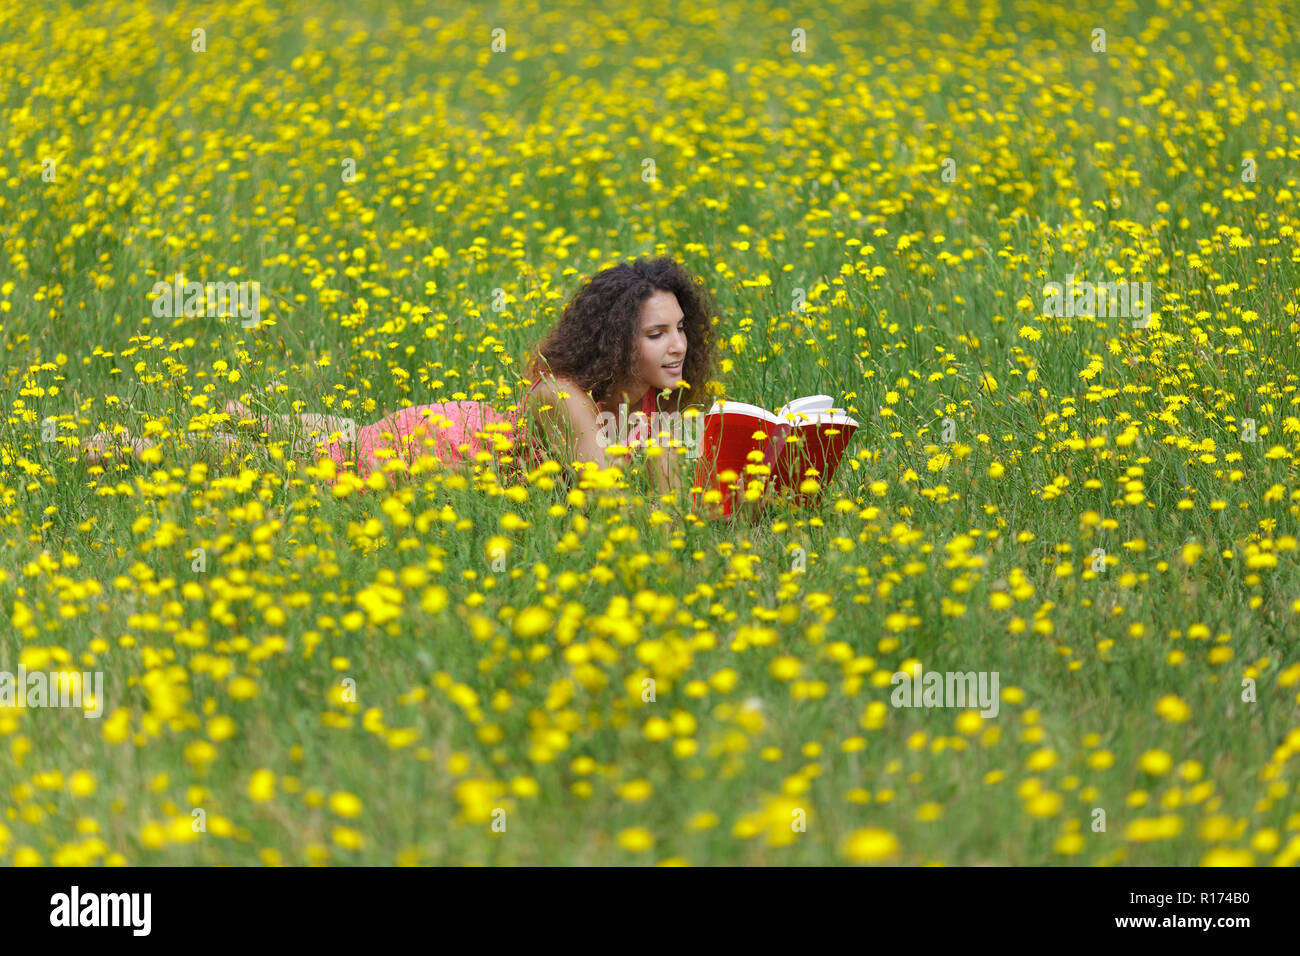 Linda mujer joven con cabello rizado acostado leyendo un libro en un wildflower meadow lleno de coloridas flores amarillas como ella se relaja en la tranquilidad Foto de stock